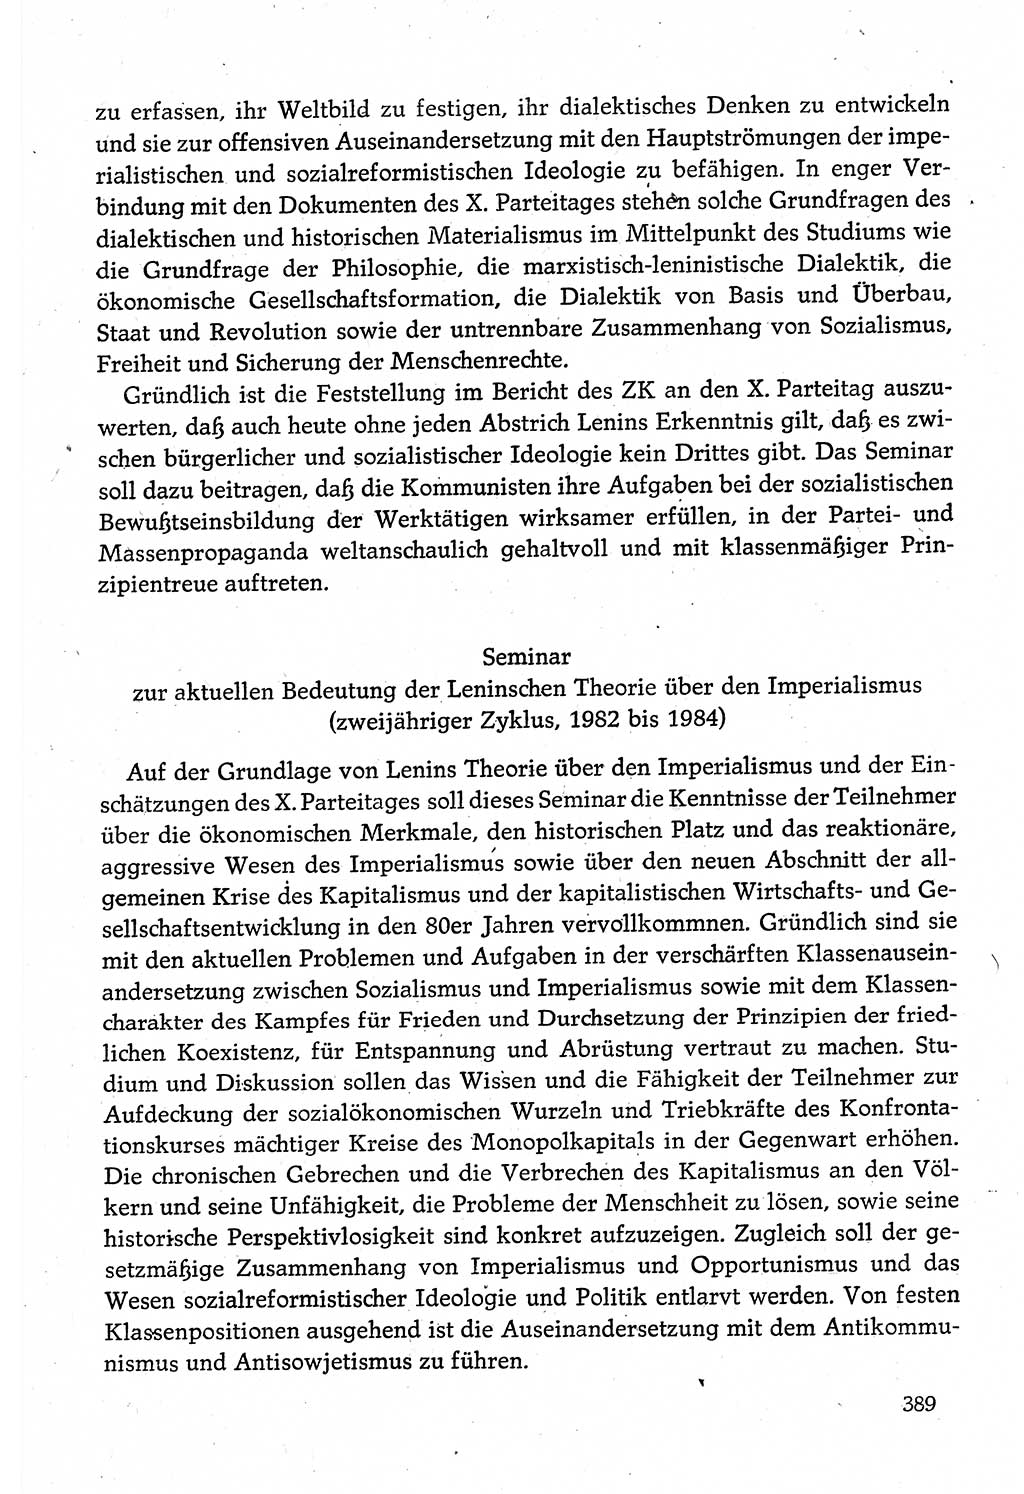 Dokumente der Sozialistischen Einheitspartei Deutschlands (SED) [Deutsche Demokratische Republik (DDR)] 1980-1981, Seite 389 (Dok. SED DDR 1980-1981, S. 389)